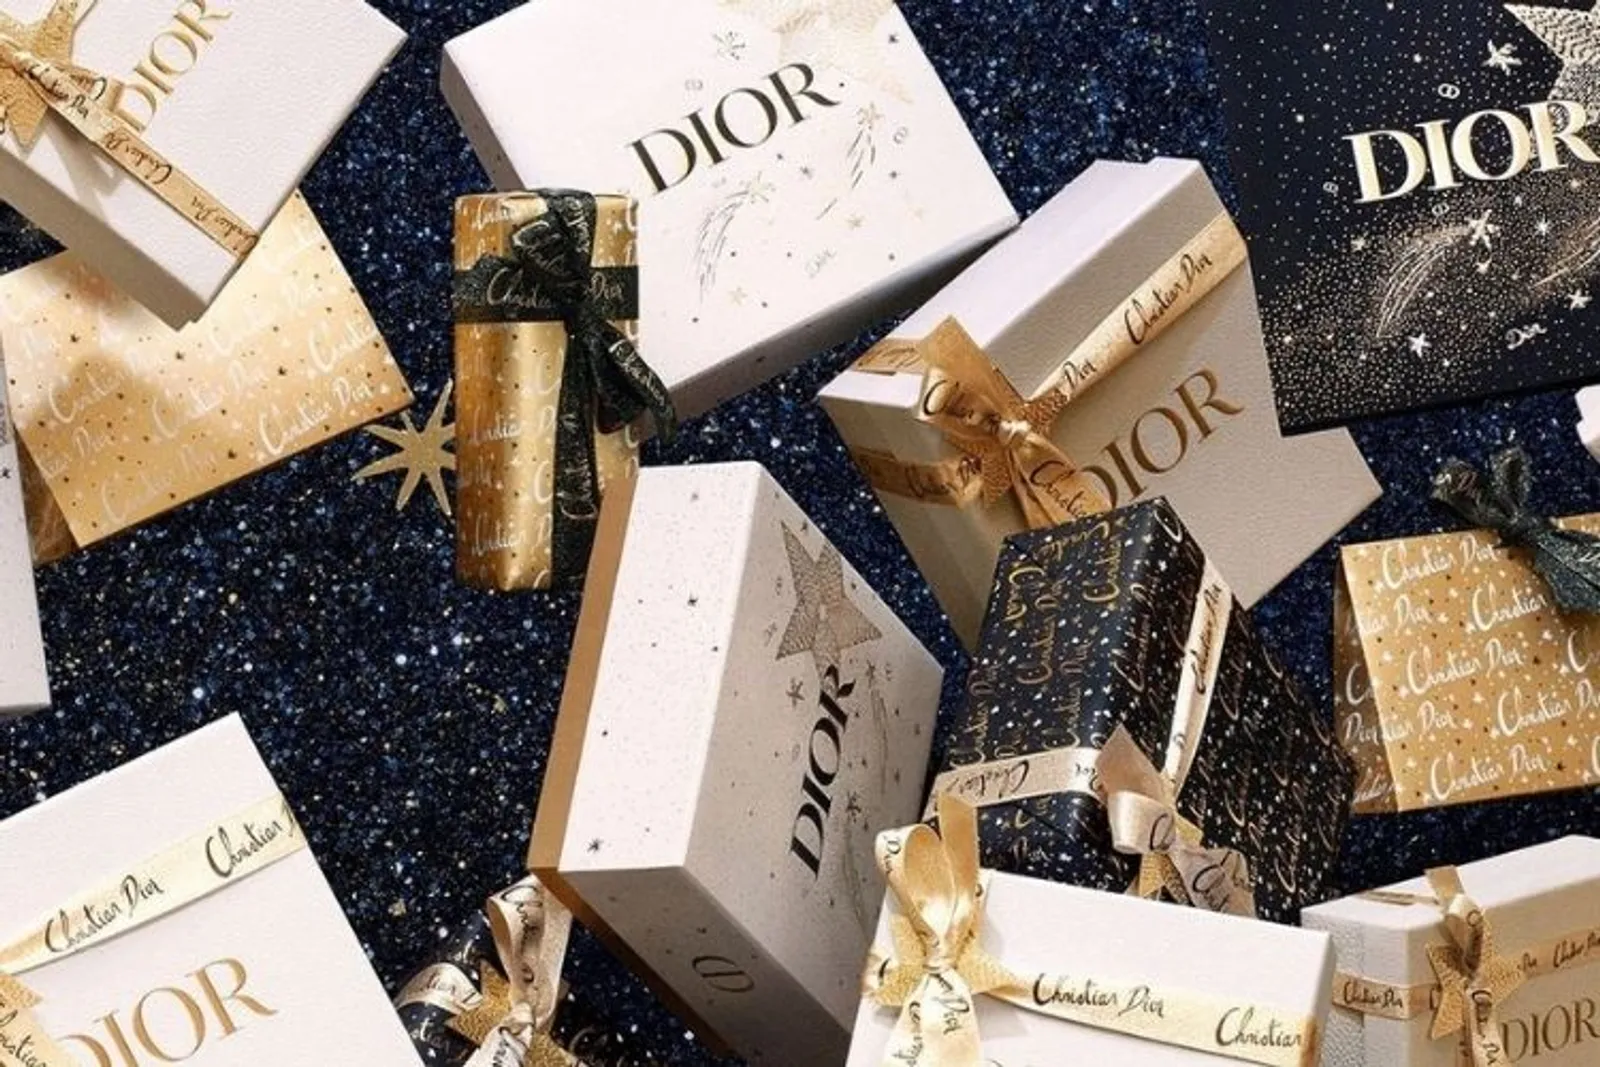 Sambut Akhir Tahun, Dior Luncurkan Koleksi Fancy dan Glamor